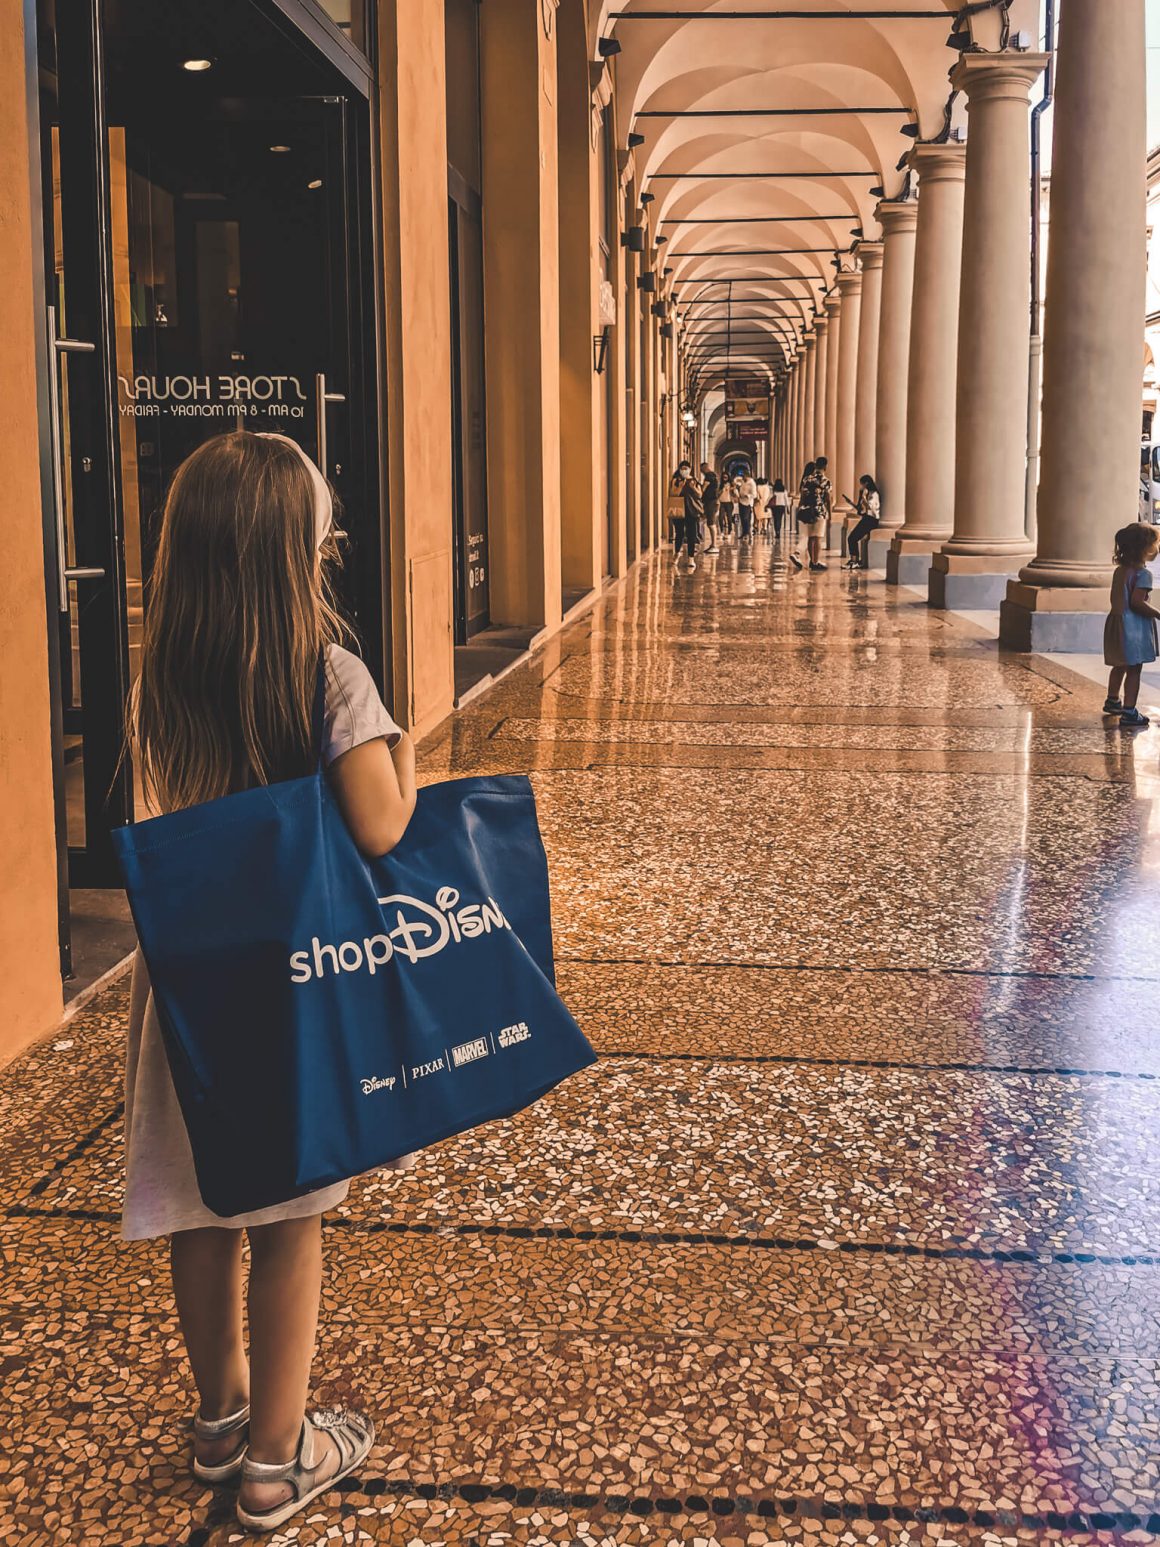 Zakupy w sklepie Disney w czasie wizyty w Bolonii.